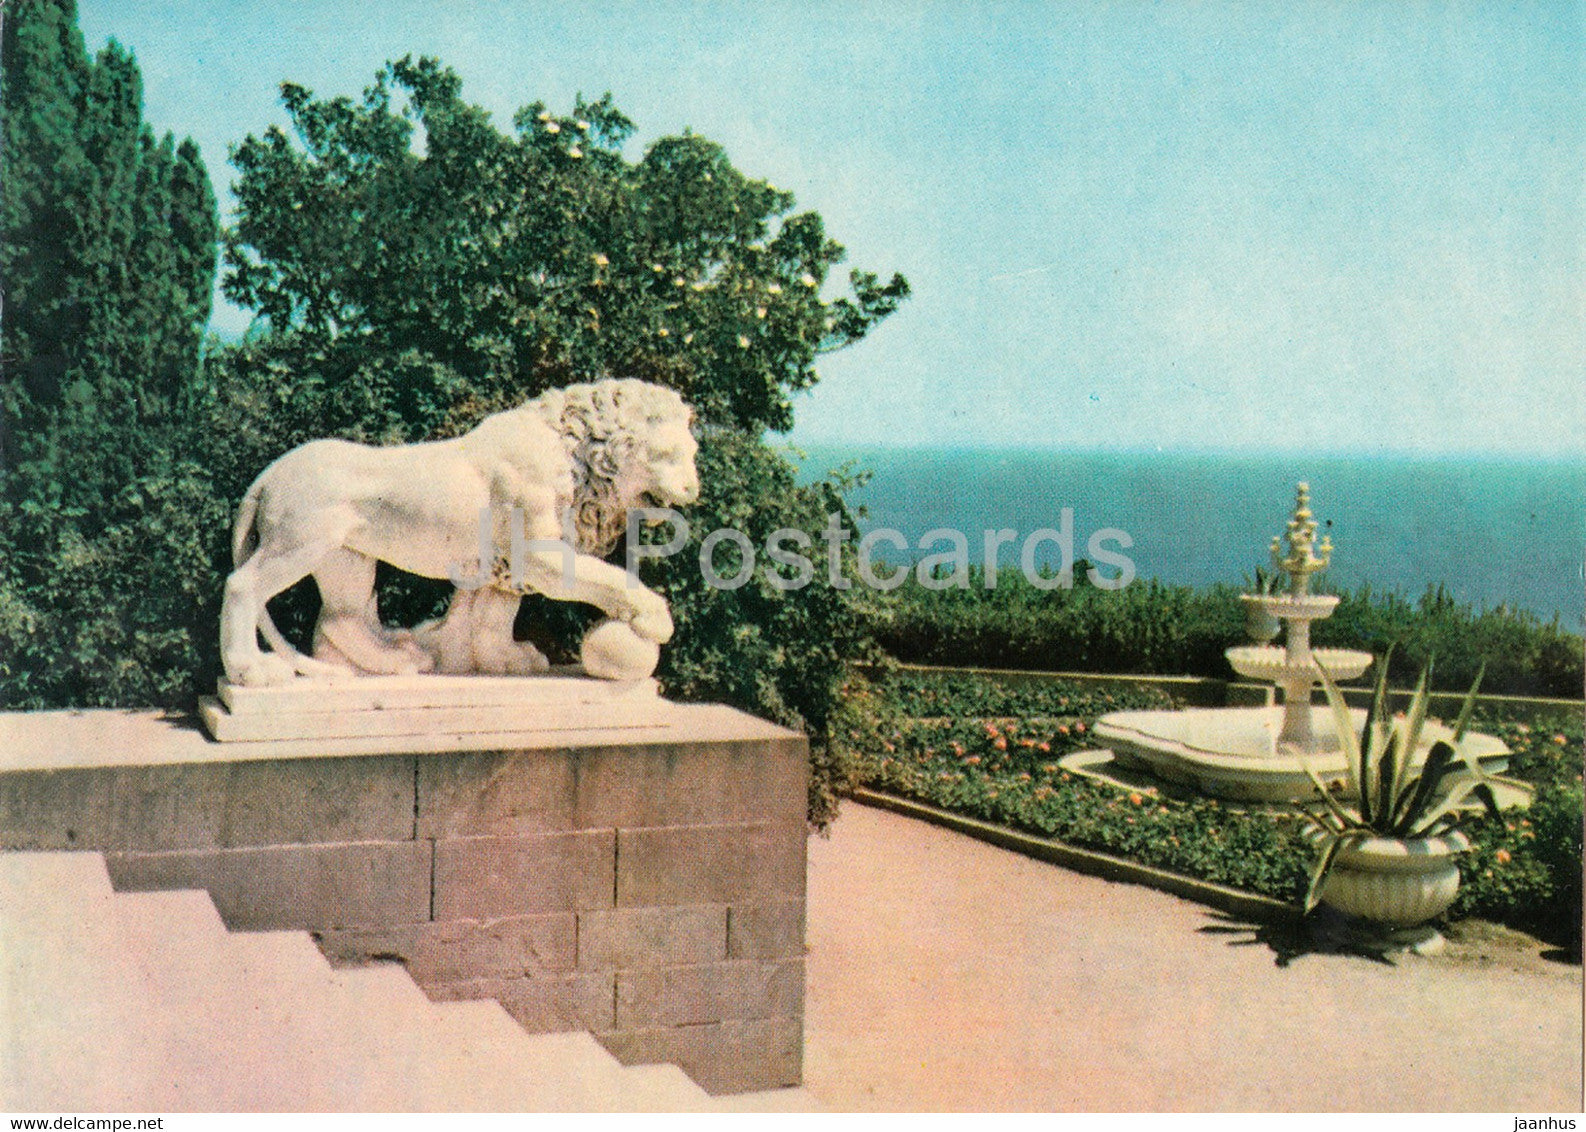 Alupka - a lion on the terrace of the Palace Museum - Crimea - 1971 - Ukraine USSR - unused - JH Postcards